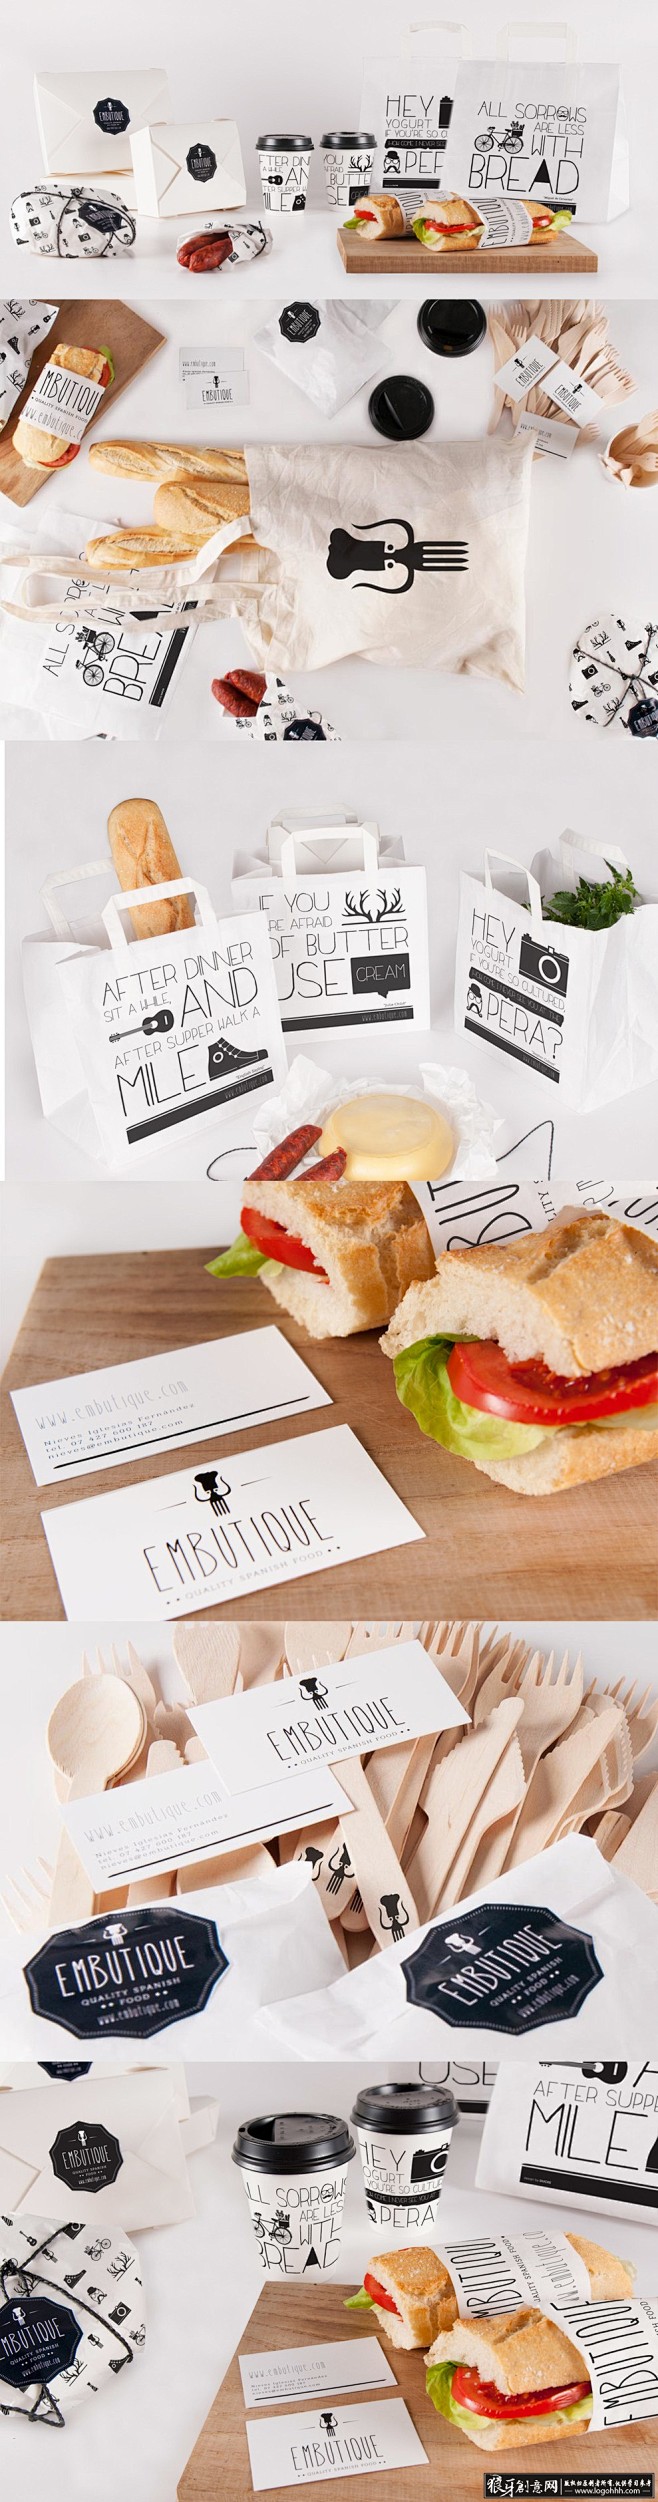 包装设计灵感 创意三明治包装设计 创意食...